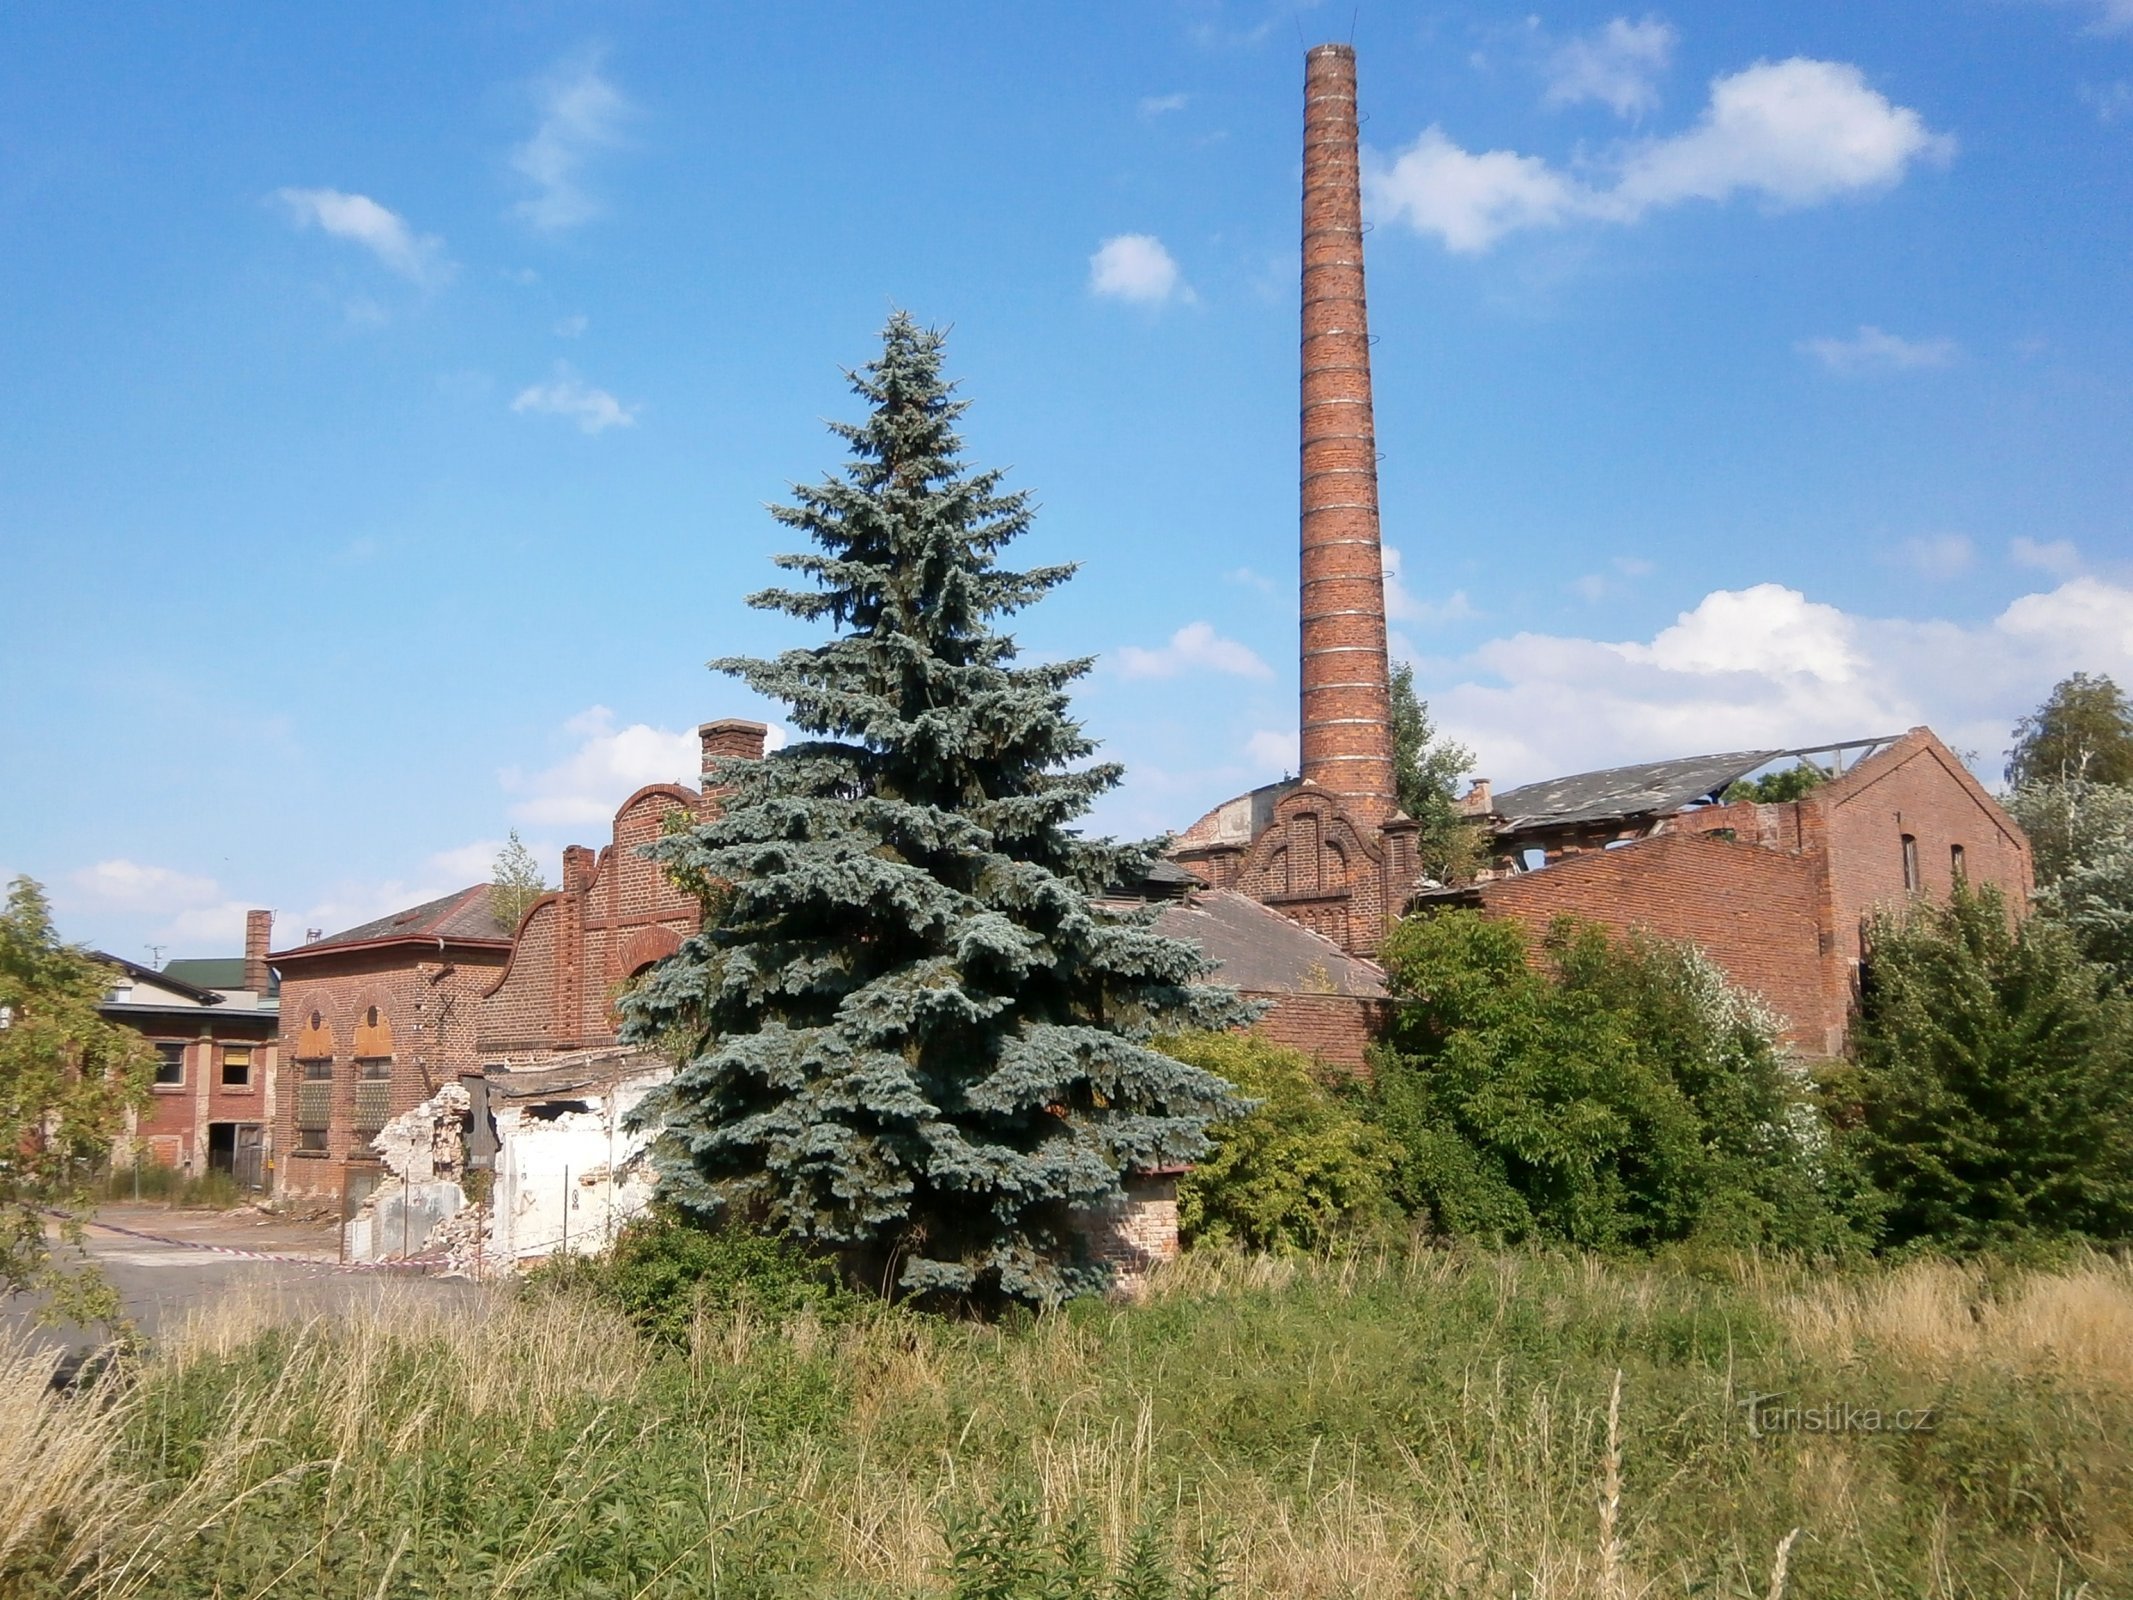 Шкіряний завод у Кукленях перед його знесенням (Градец Кралове, 19.6.2014)